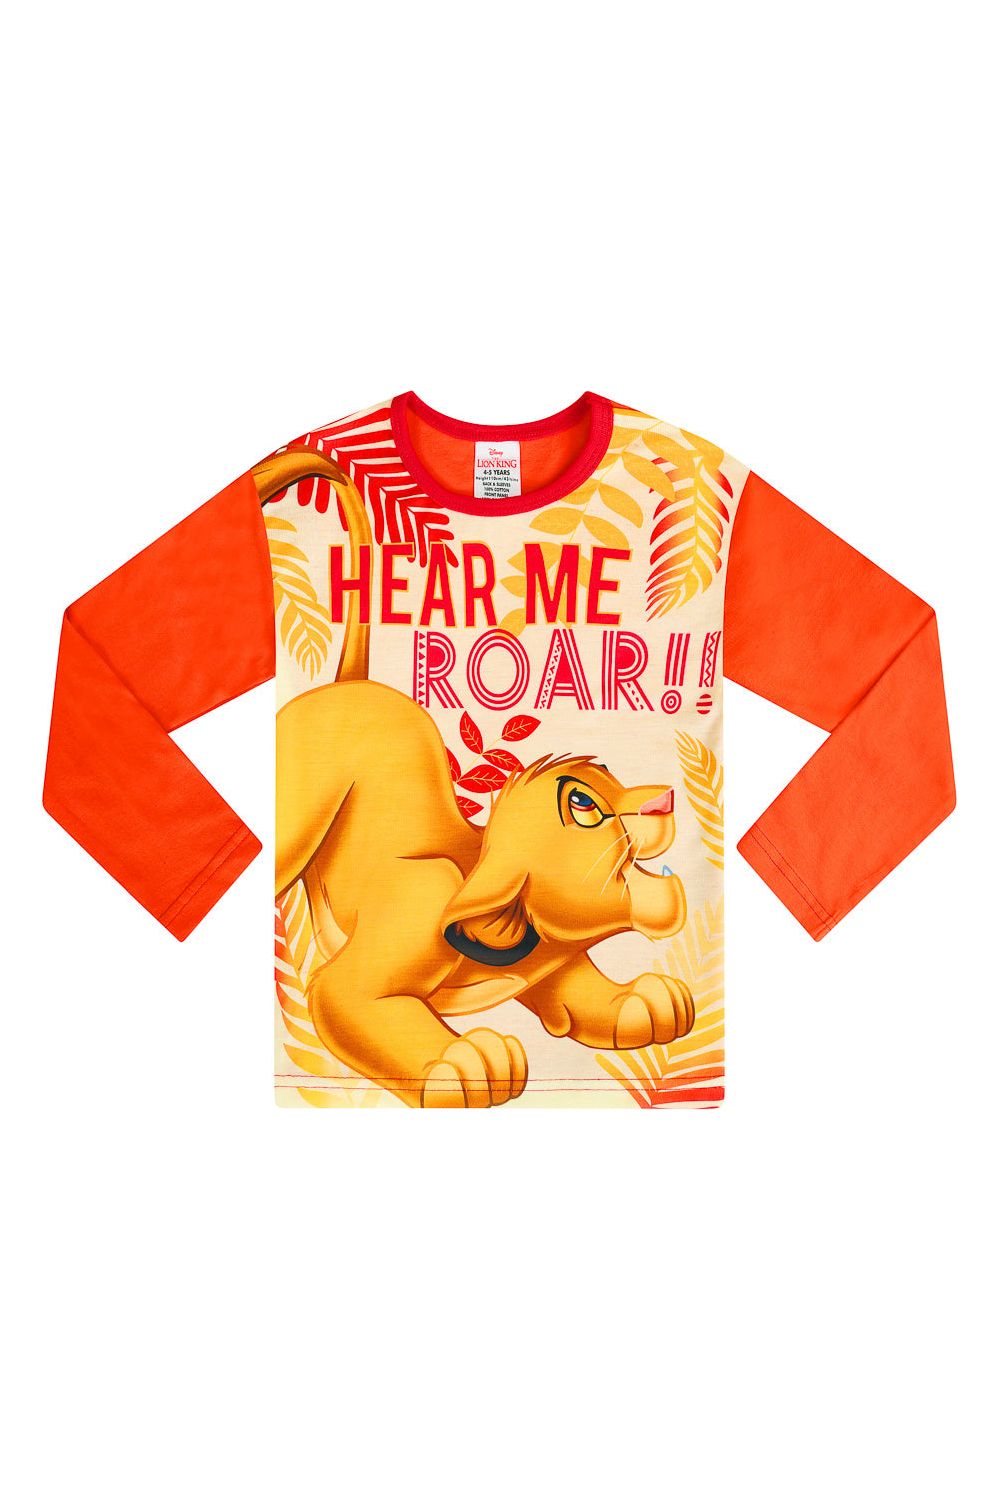 Disney Lion King Long Pyjamas - Pyjamas.com